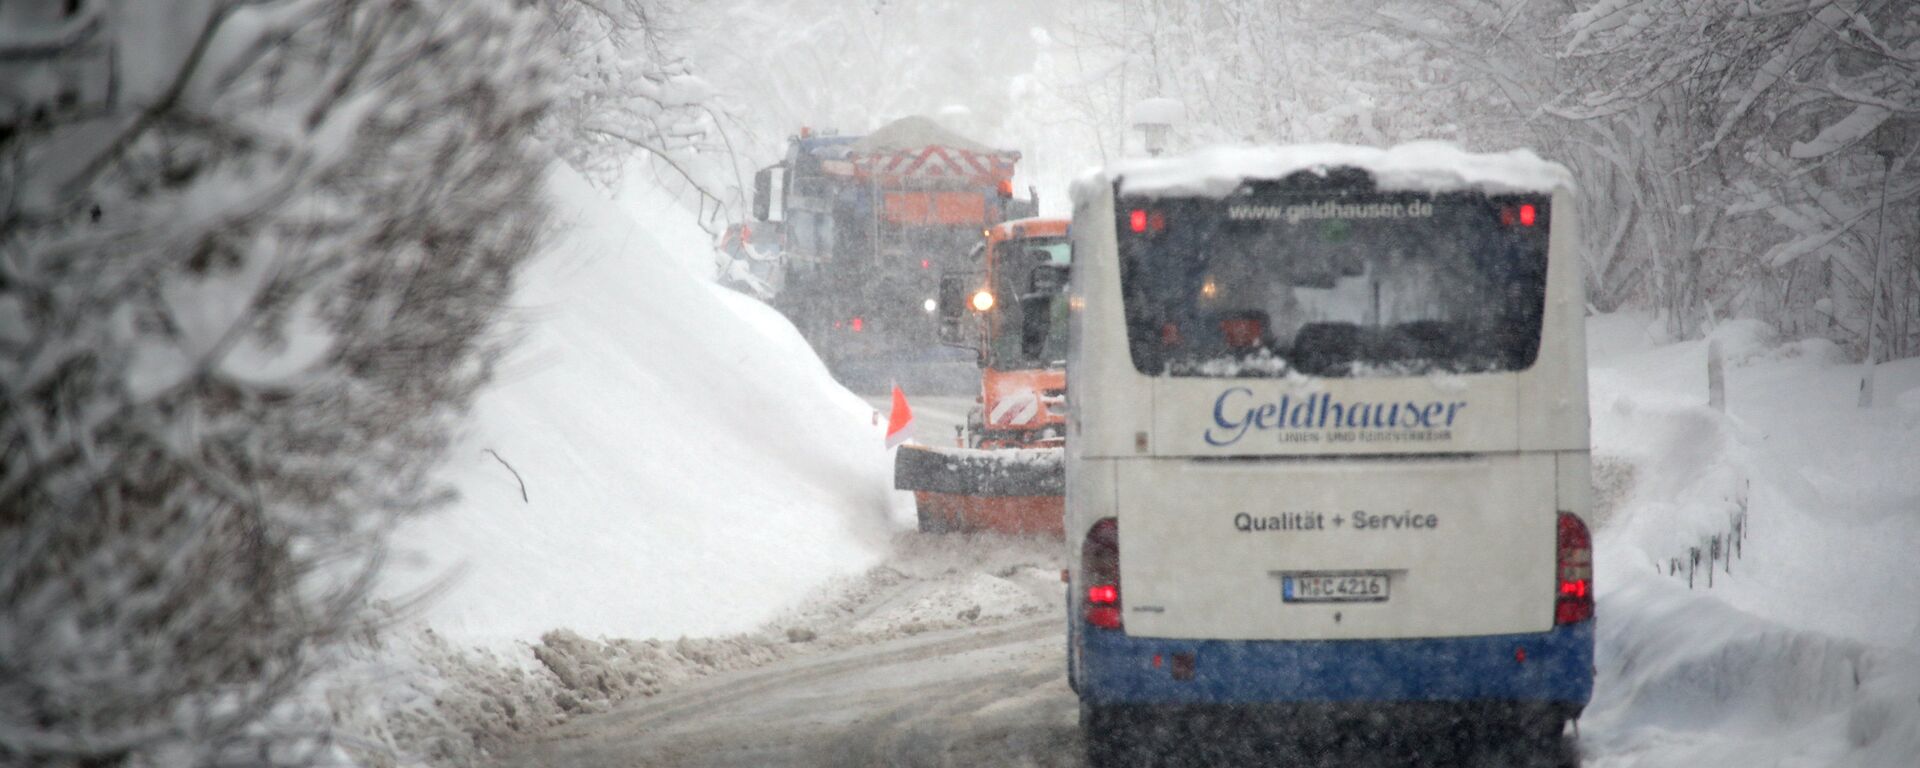 Автобус на дороге после сильных снегопадов возле Иршенберга, Германия - Sputnik Латвия, 1920, 25.01.2021